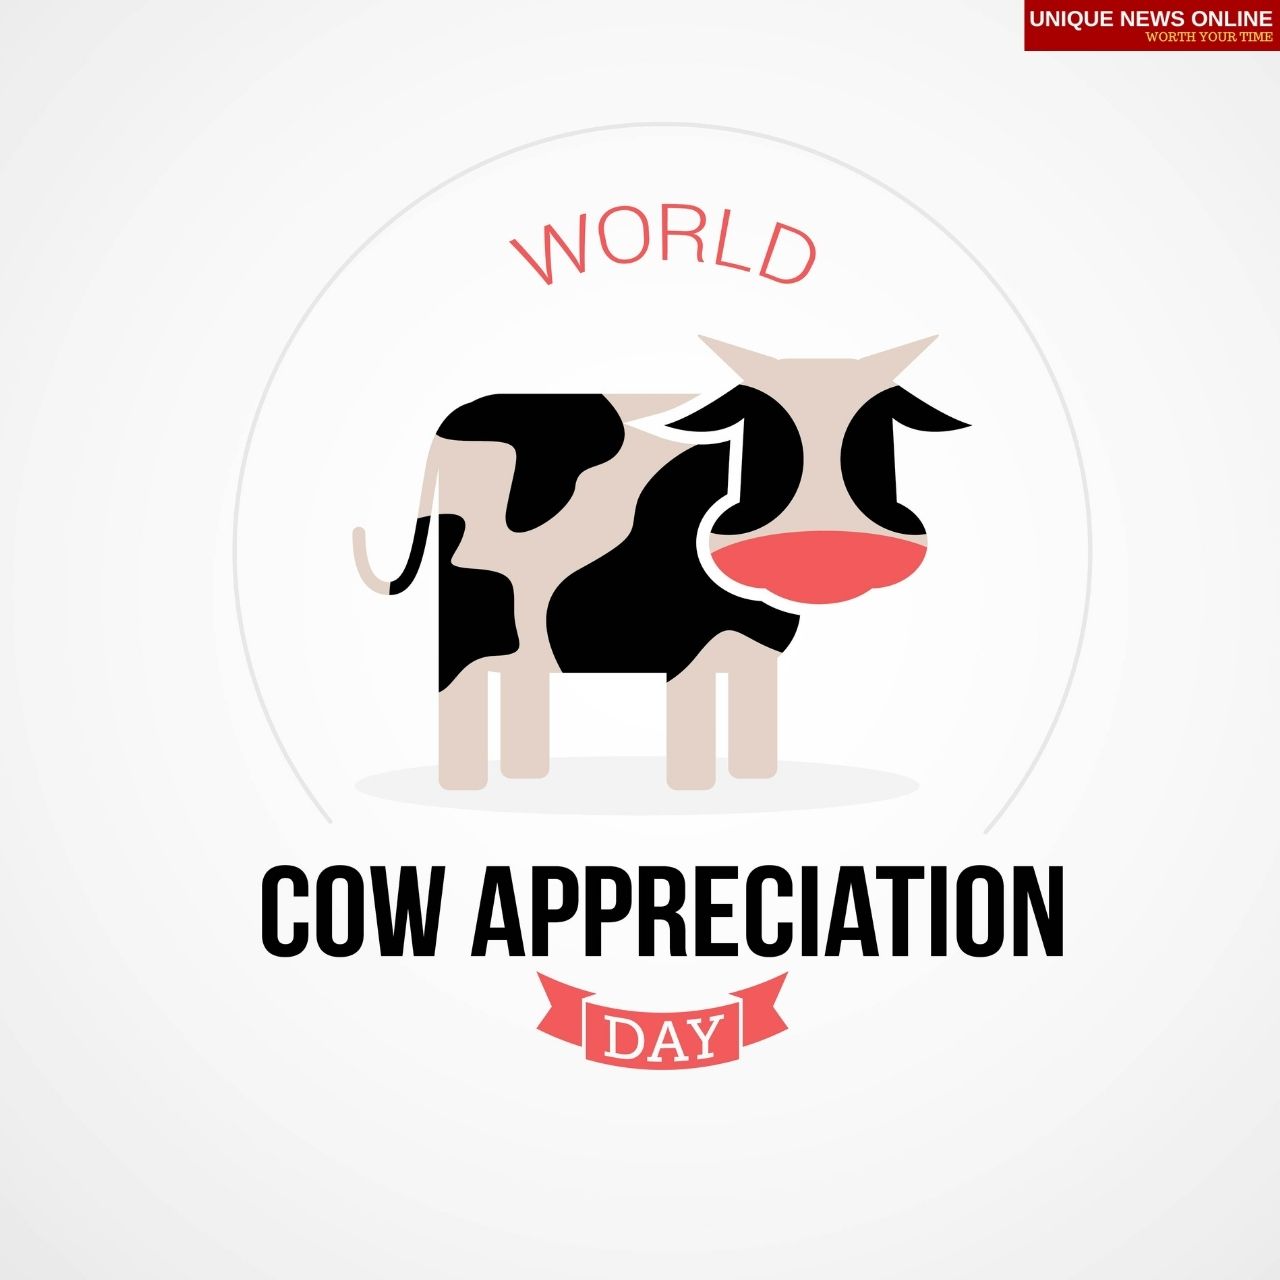 يوم تقدير البقر 2021 اقتباسات وصور ورسائل للمشاركة لتسليط الضوء على أهمية الأبقار في حياتنا